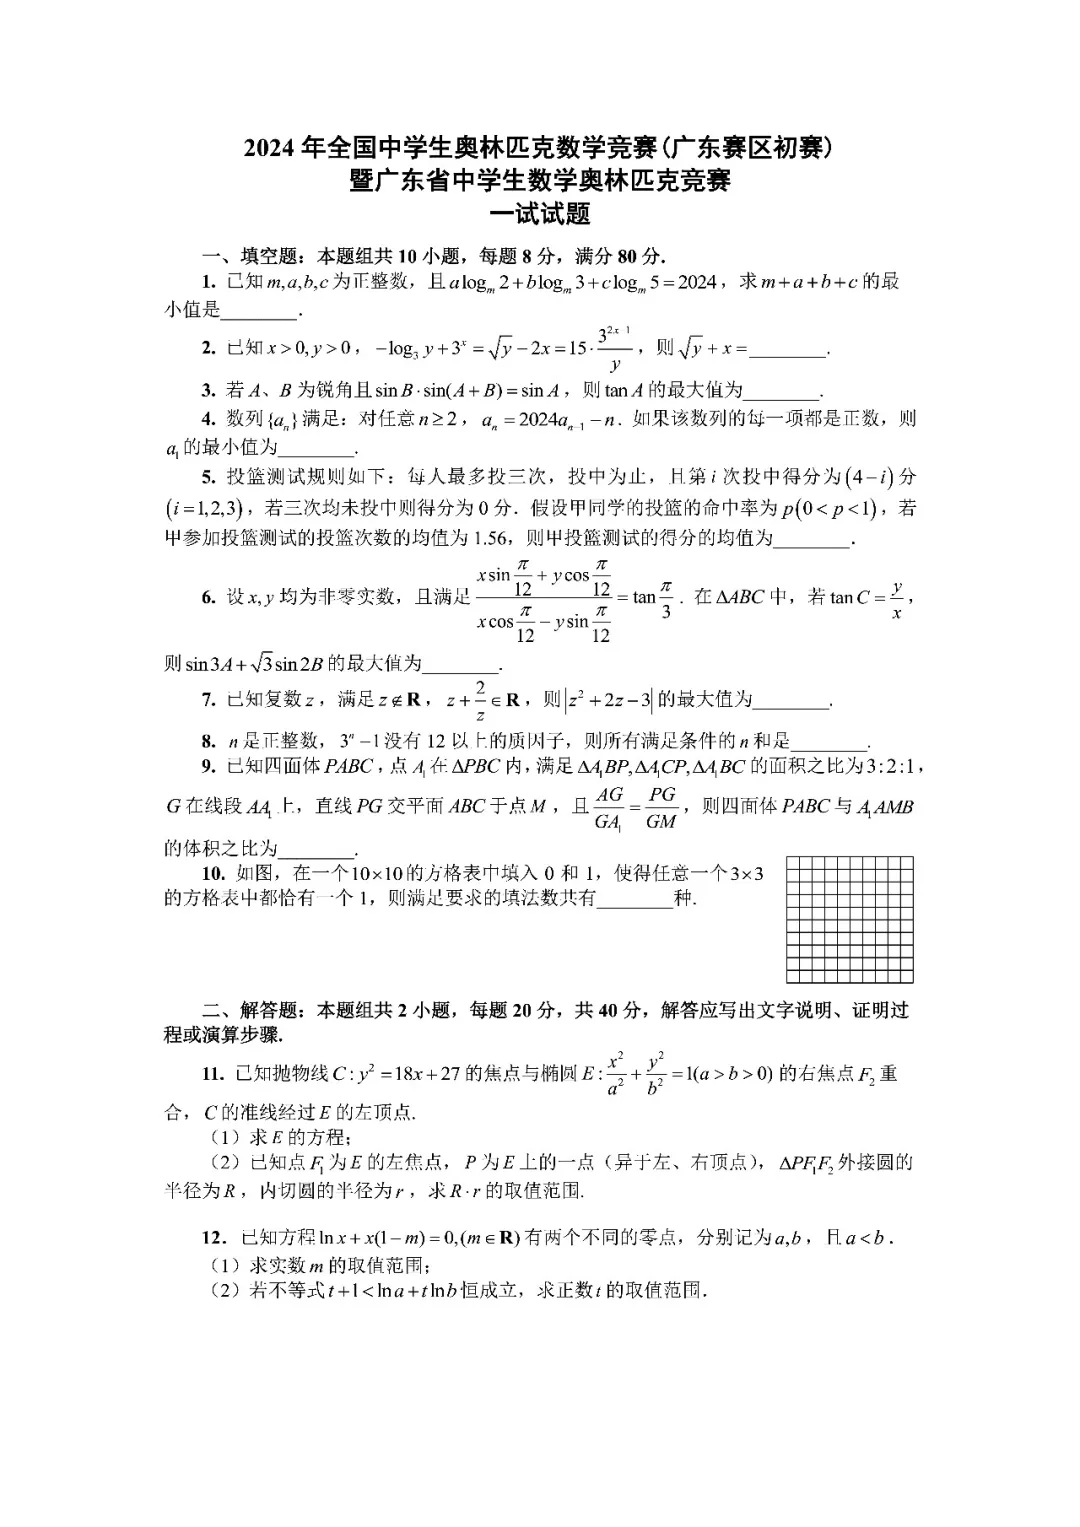 2024全国中学生数学竞赛广东预赛一试试题1